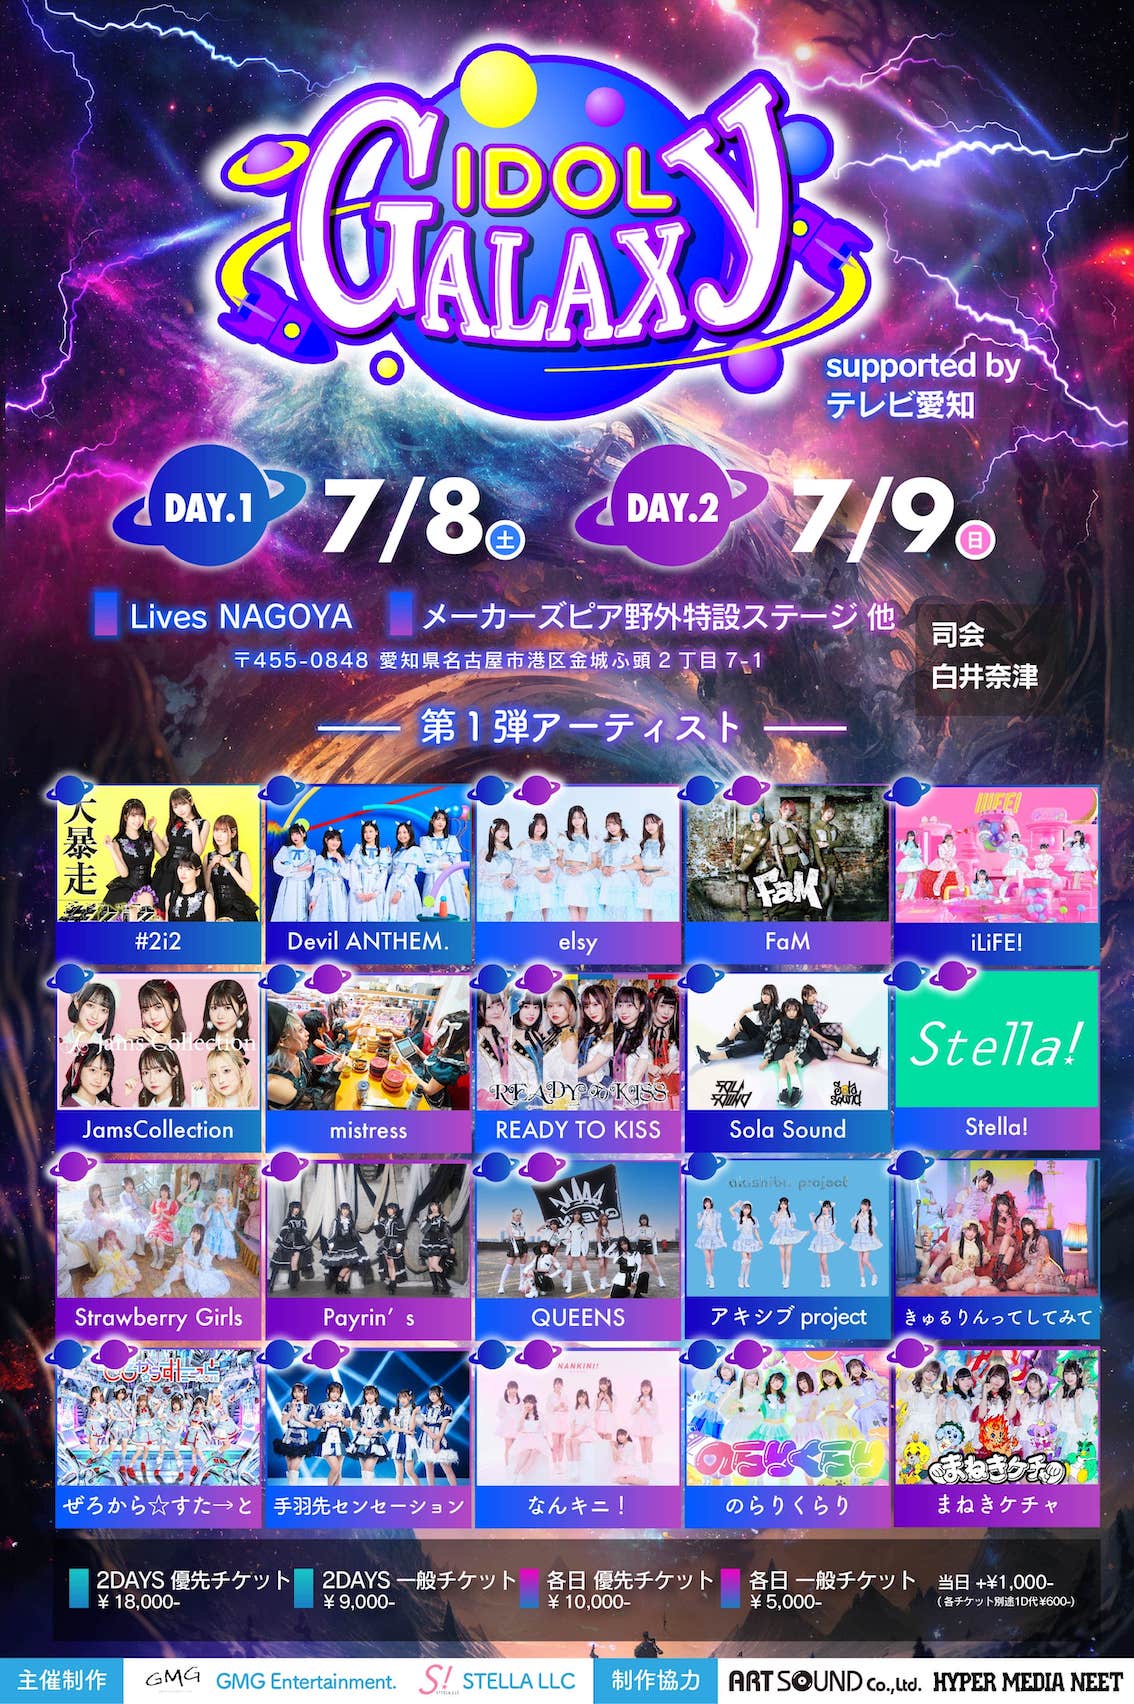 「IDOL GALAXY」supported by テレビ愛知